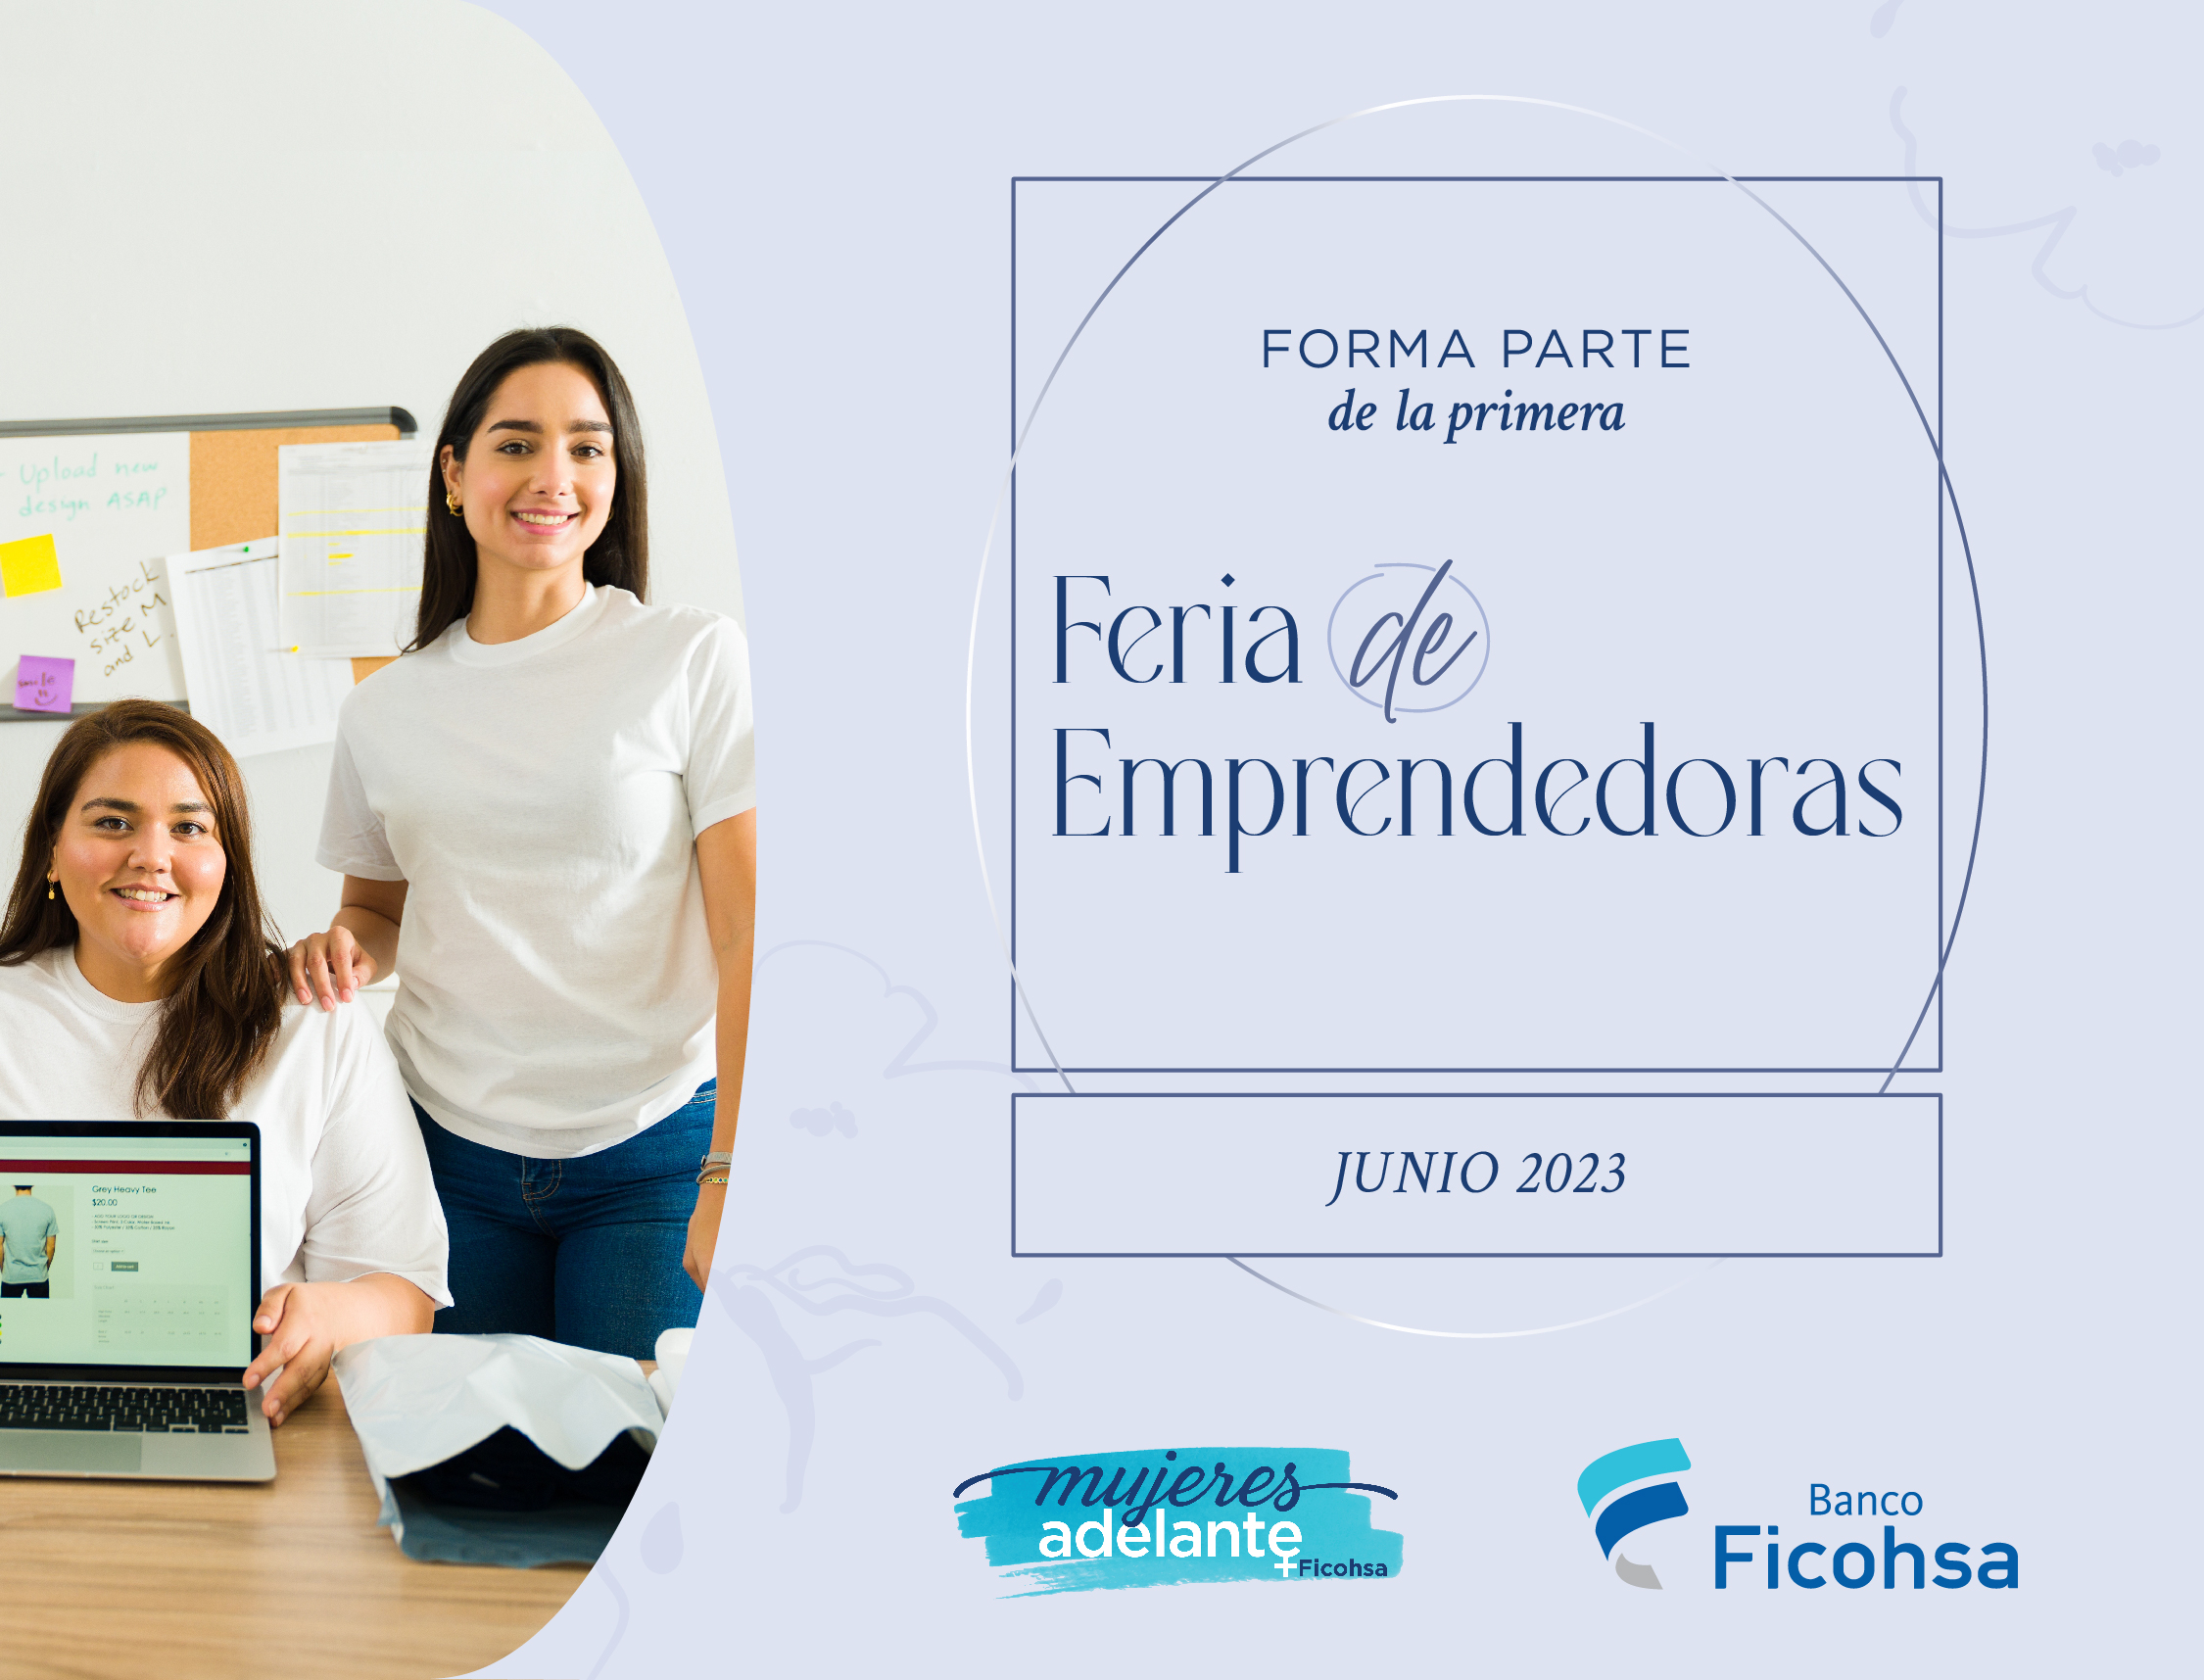 Postúlate y participa en la primera Feria de Emprendedoras de Mujeres Adelante Ficohsa